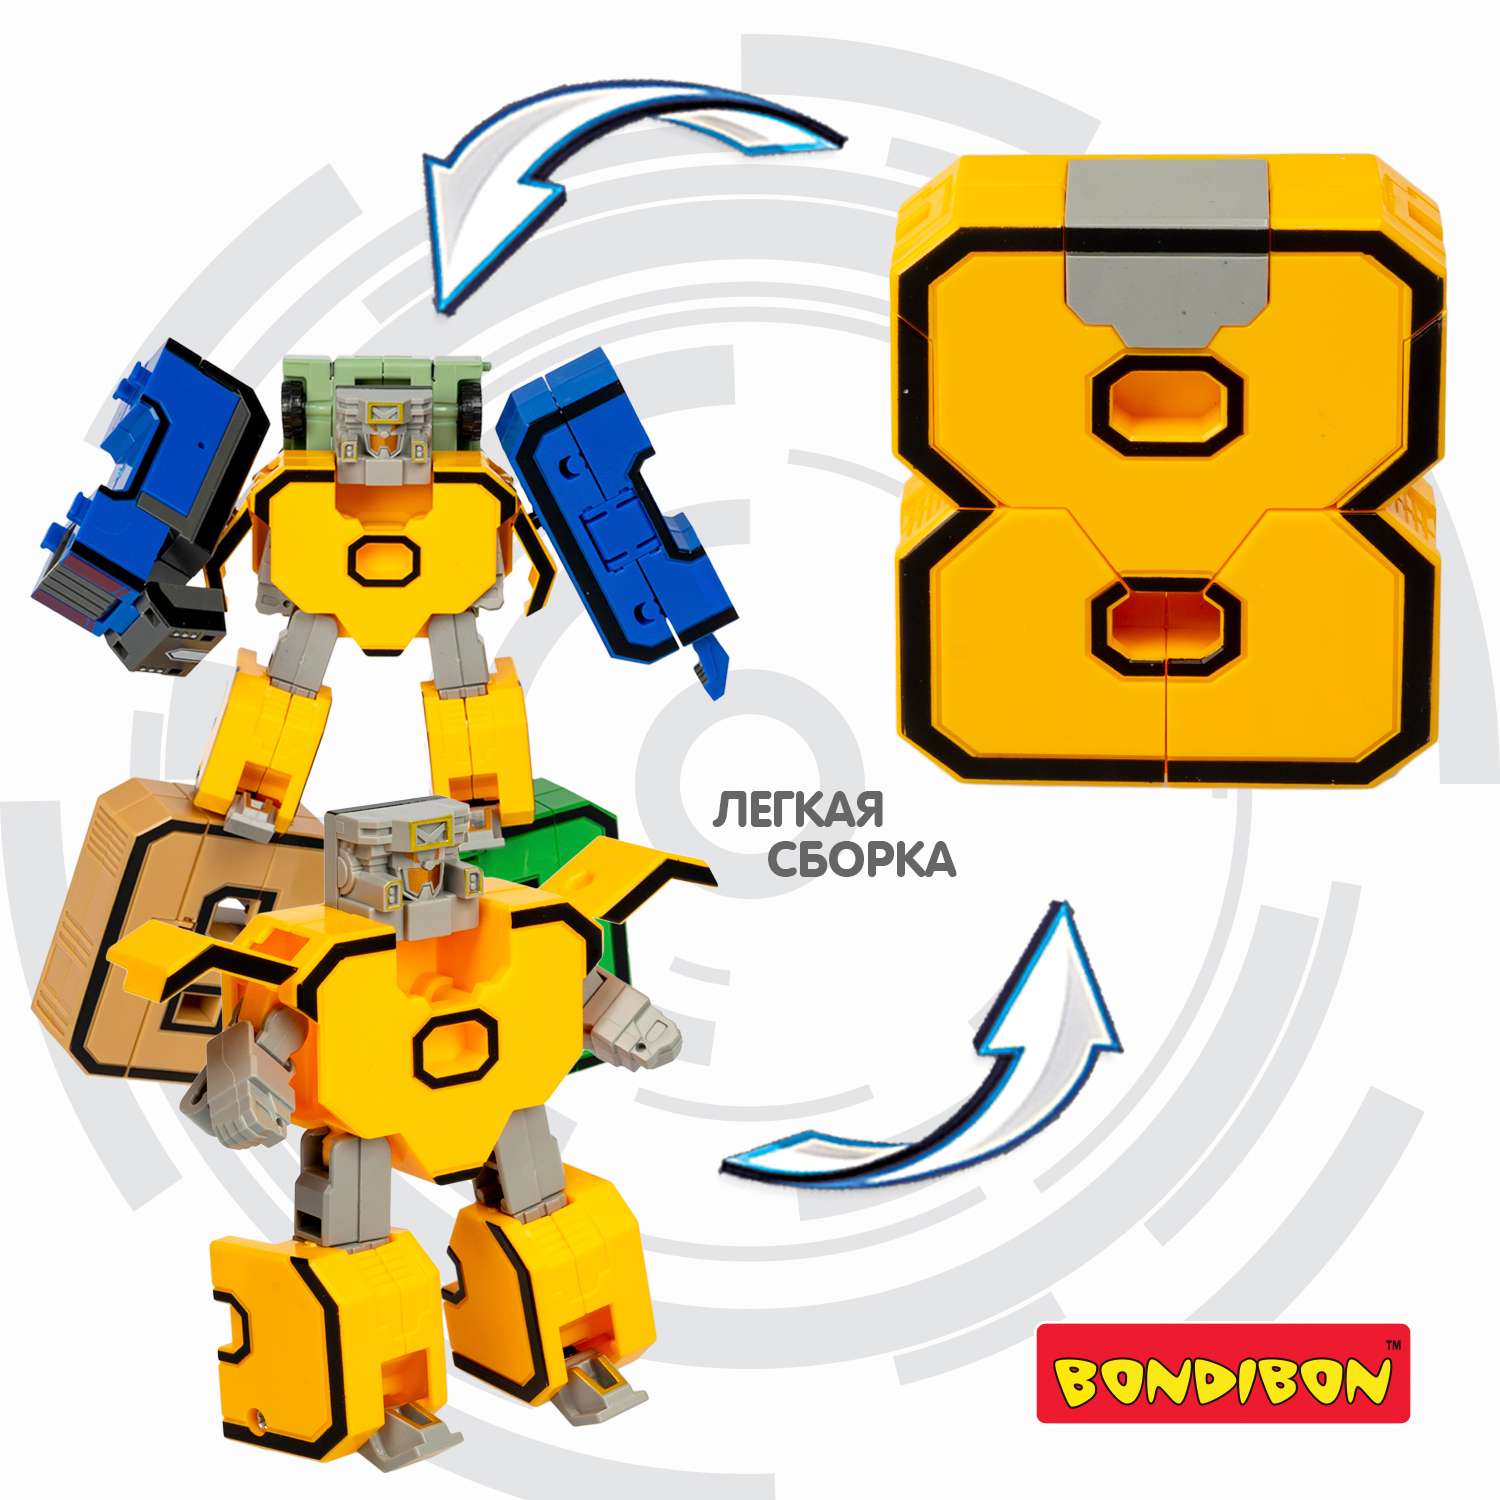 Трансформер BONDIBON bondibot 2 в 1 Цифровой переворот робот-цифра 8 жёлтого цвета в голубом боксе - фото 5